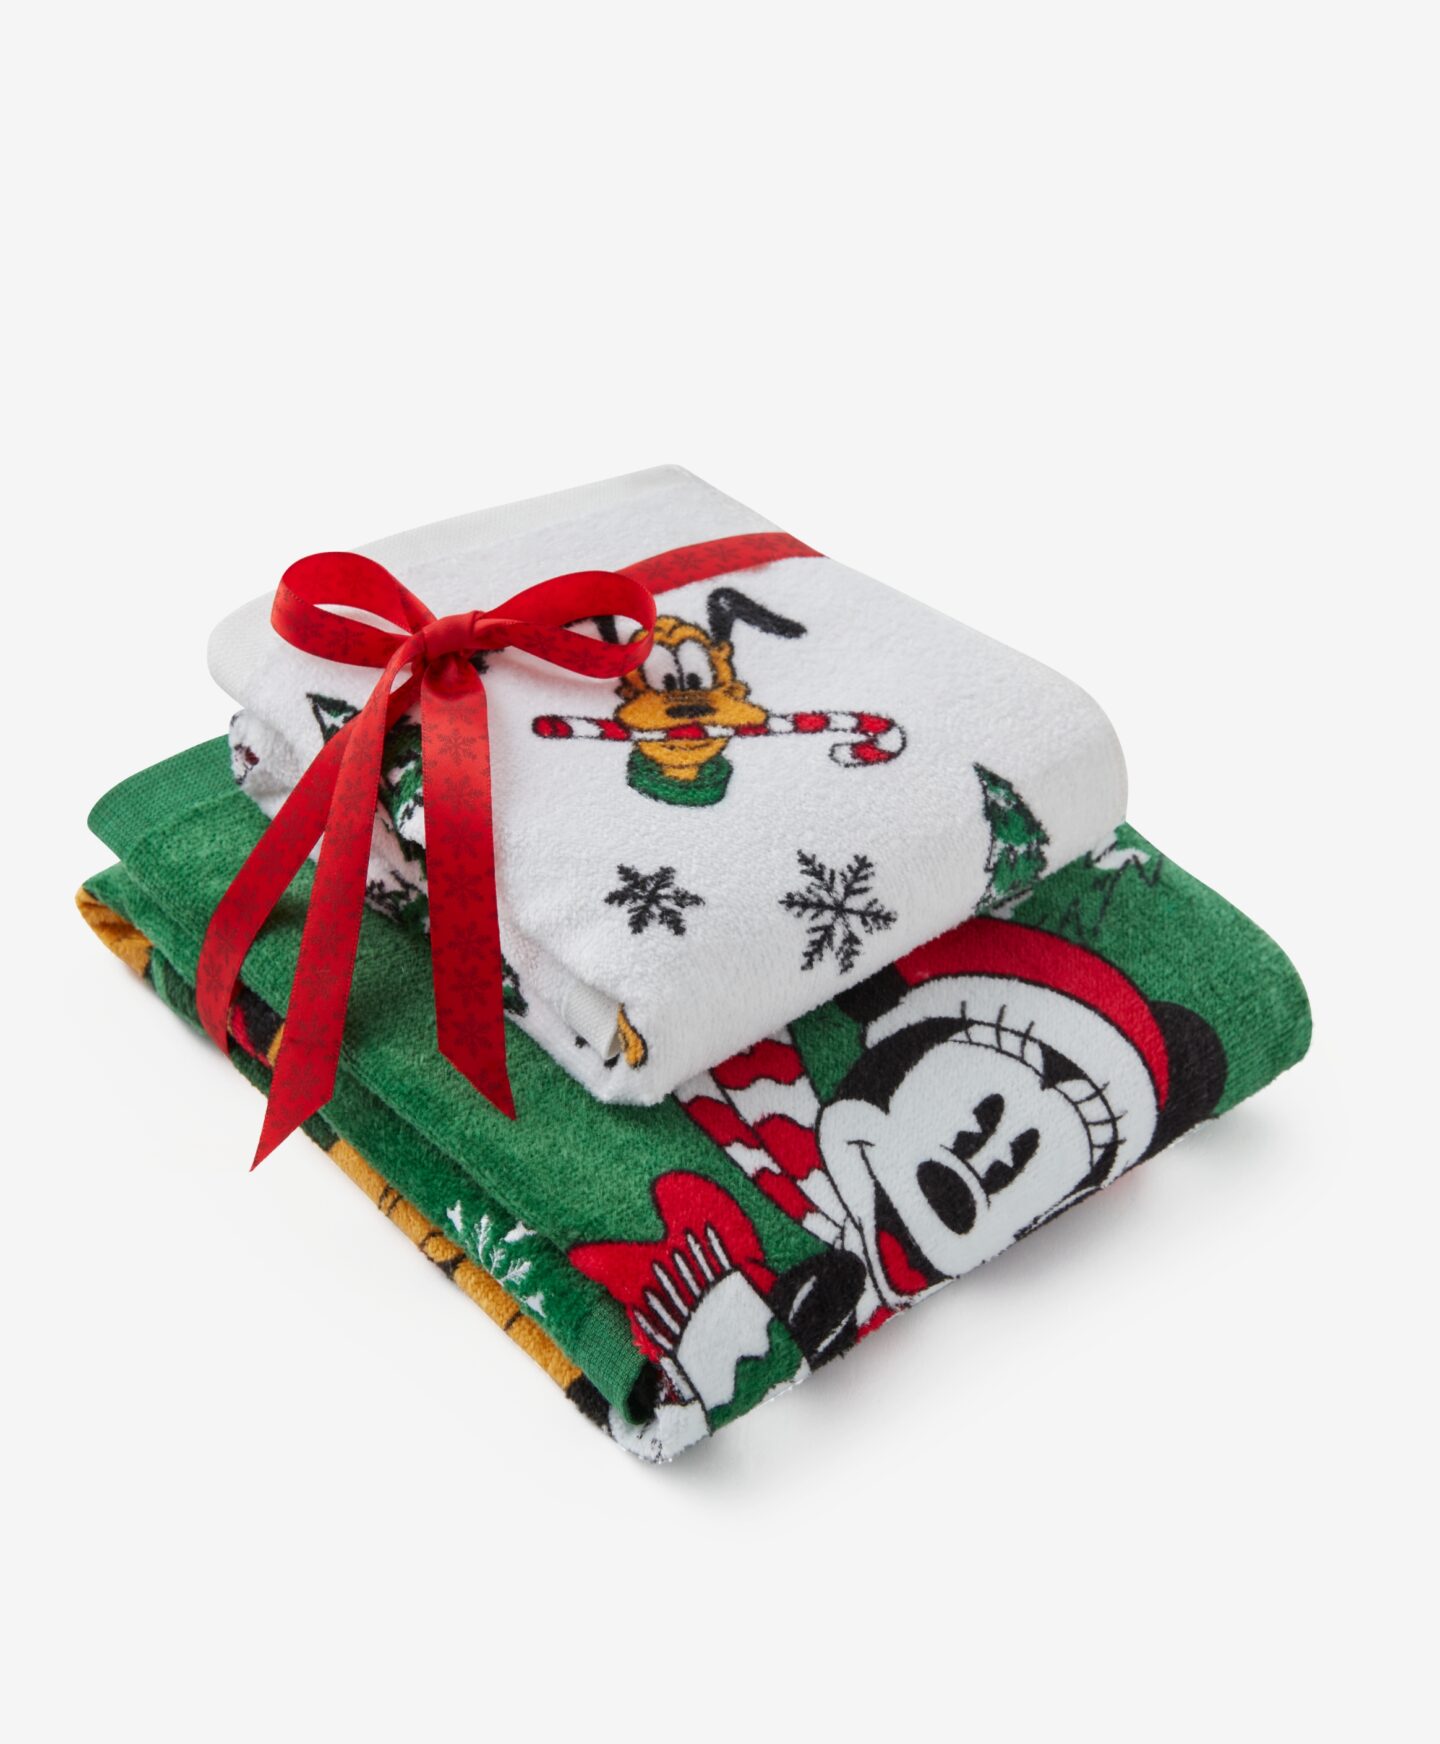 Σετ πετσέτες με άδεια χρήσης Mickey Mouse, με χριστουγεννιάτικο σχέδιο, 2 τεμάχια, διάφορα χρώματα, 30x50 + 50x70